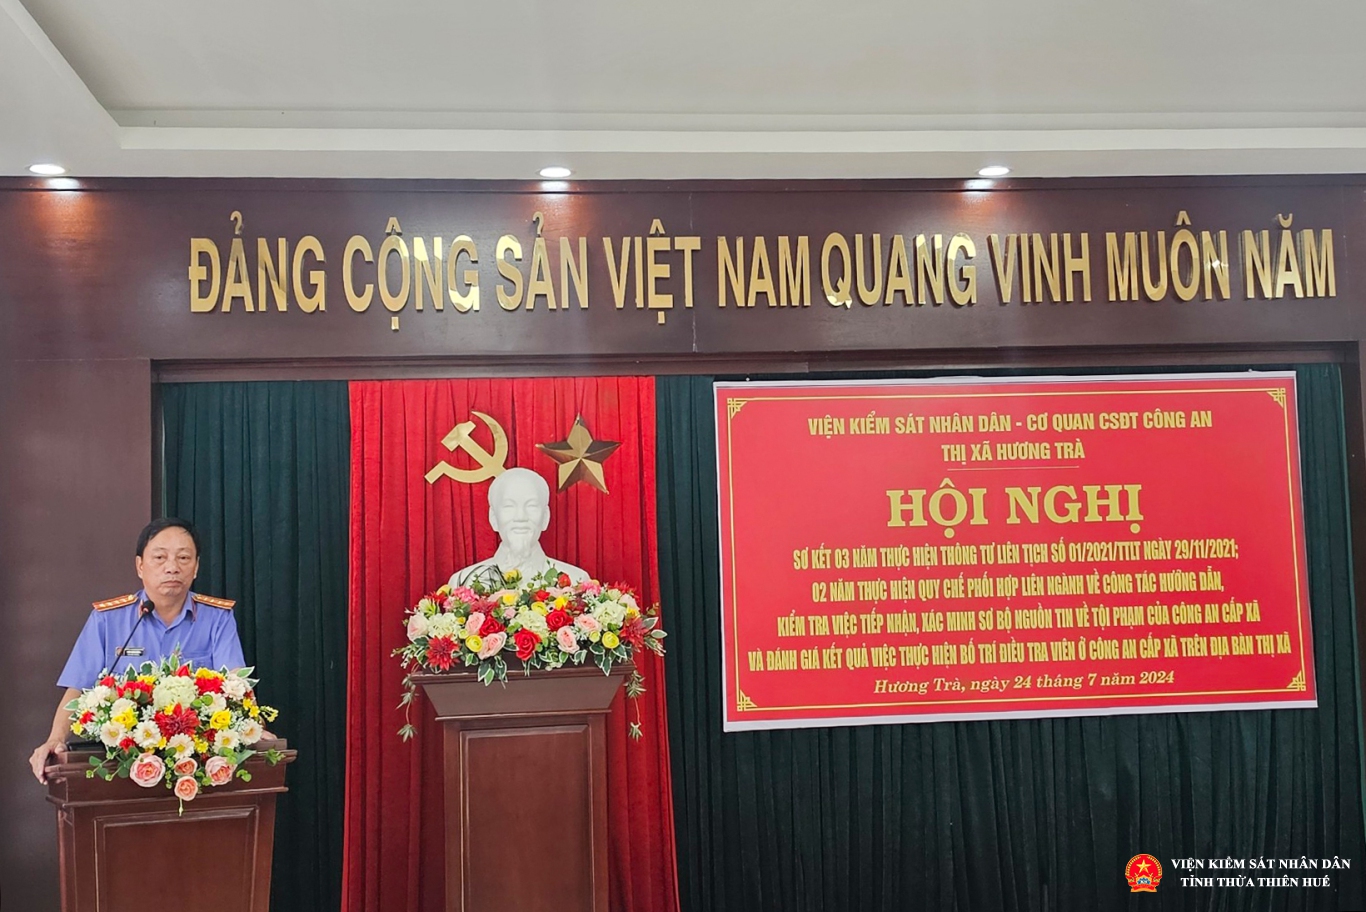 Đồng chí Trần Nhơn Vượng – Bí thư Đảng ủy, Phó Viện trưởng VKSND tỉnh Thừa Thiên Huế phát biểu chỉ đạo tại Hội nghị